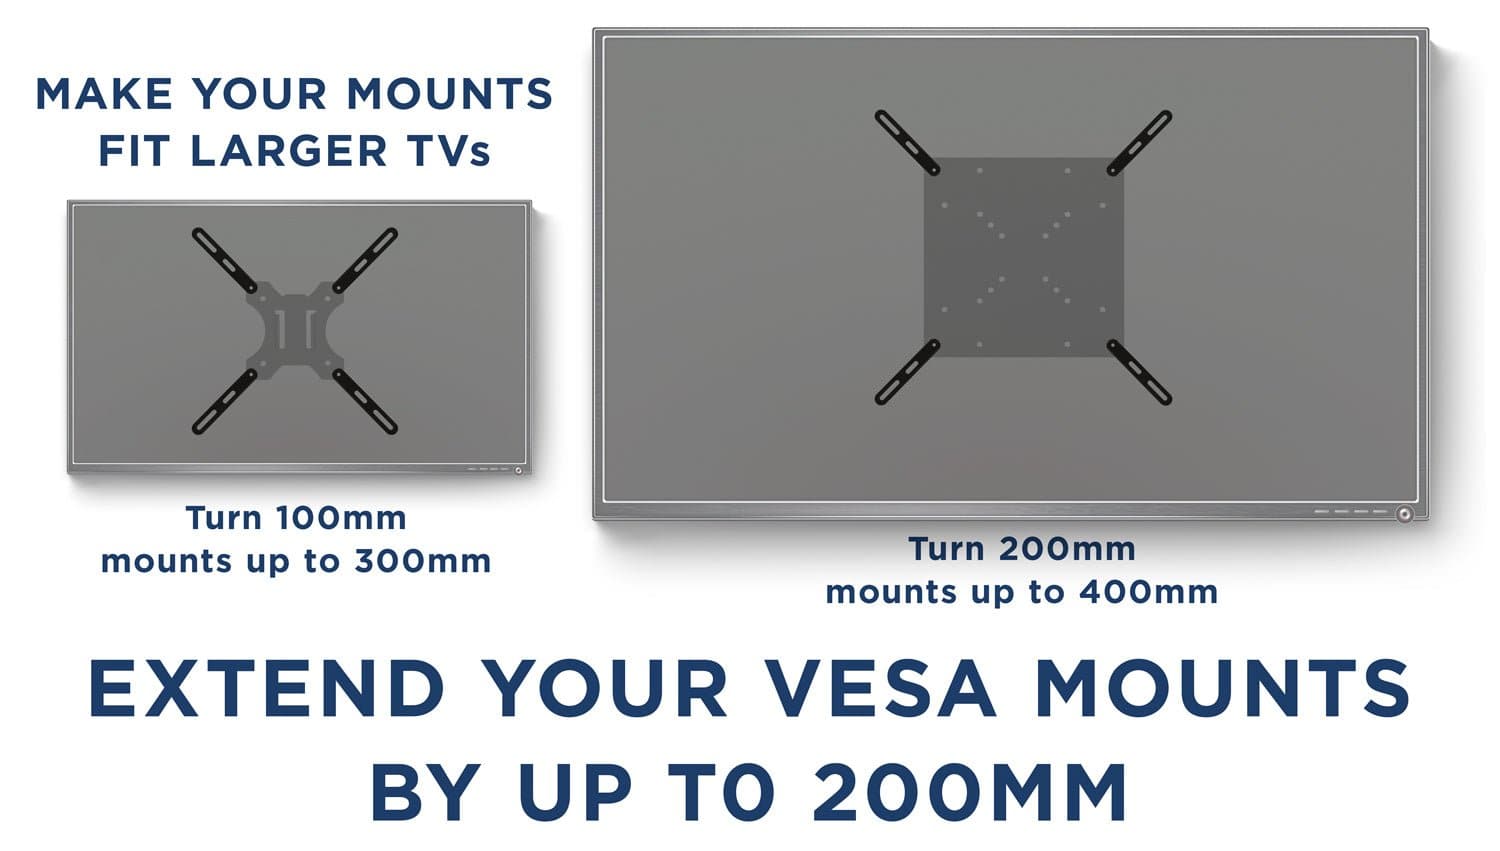 VESA Adapter plate (VESA 200 to VESA 400) + 5 YEAR WARRANTY